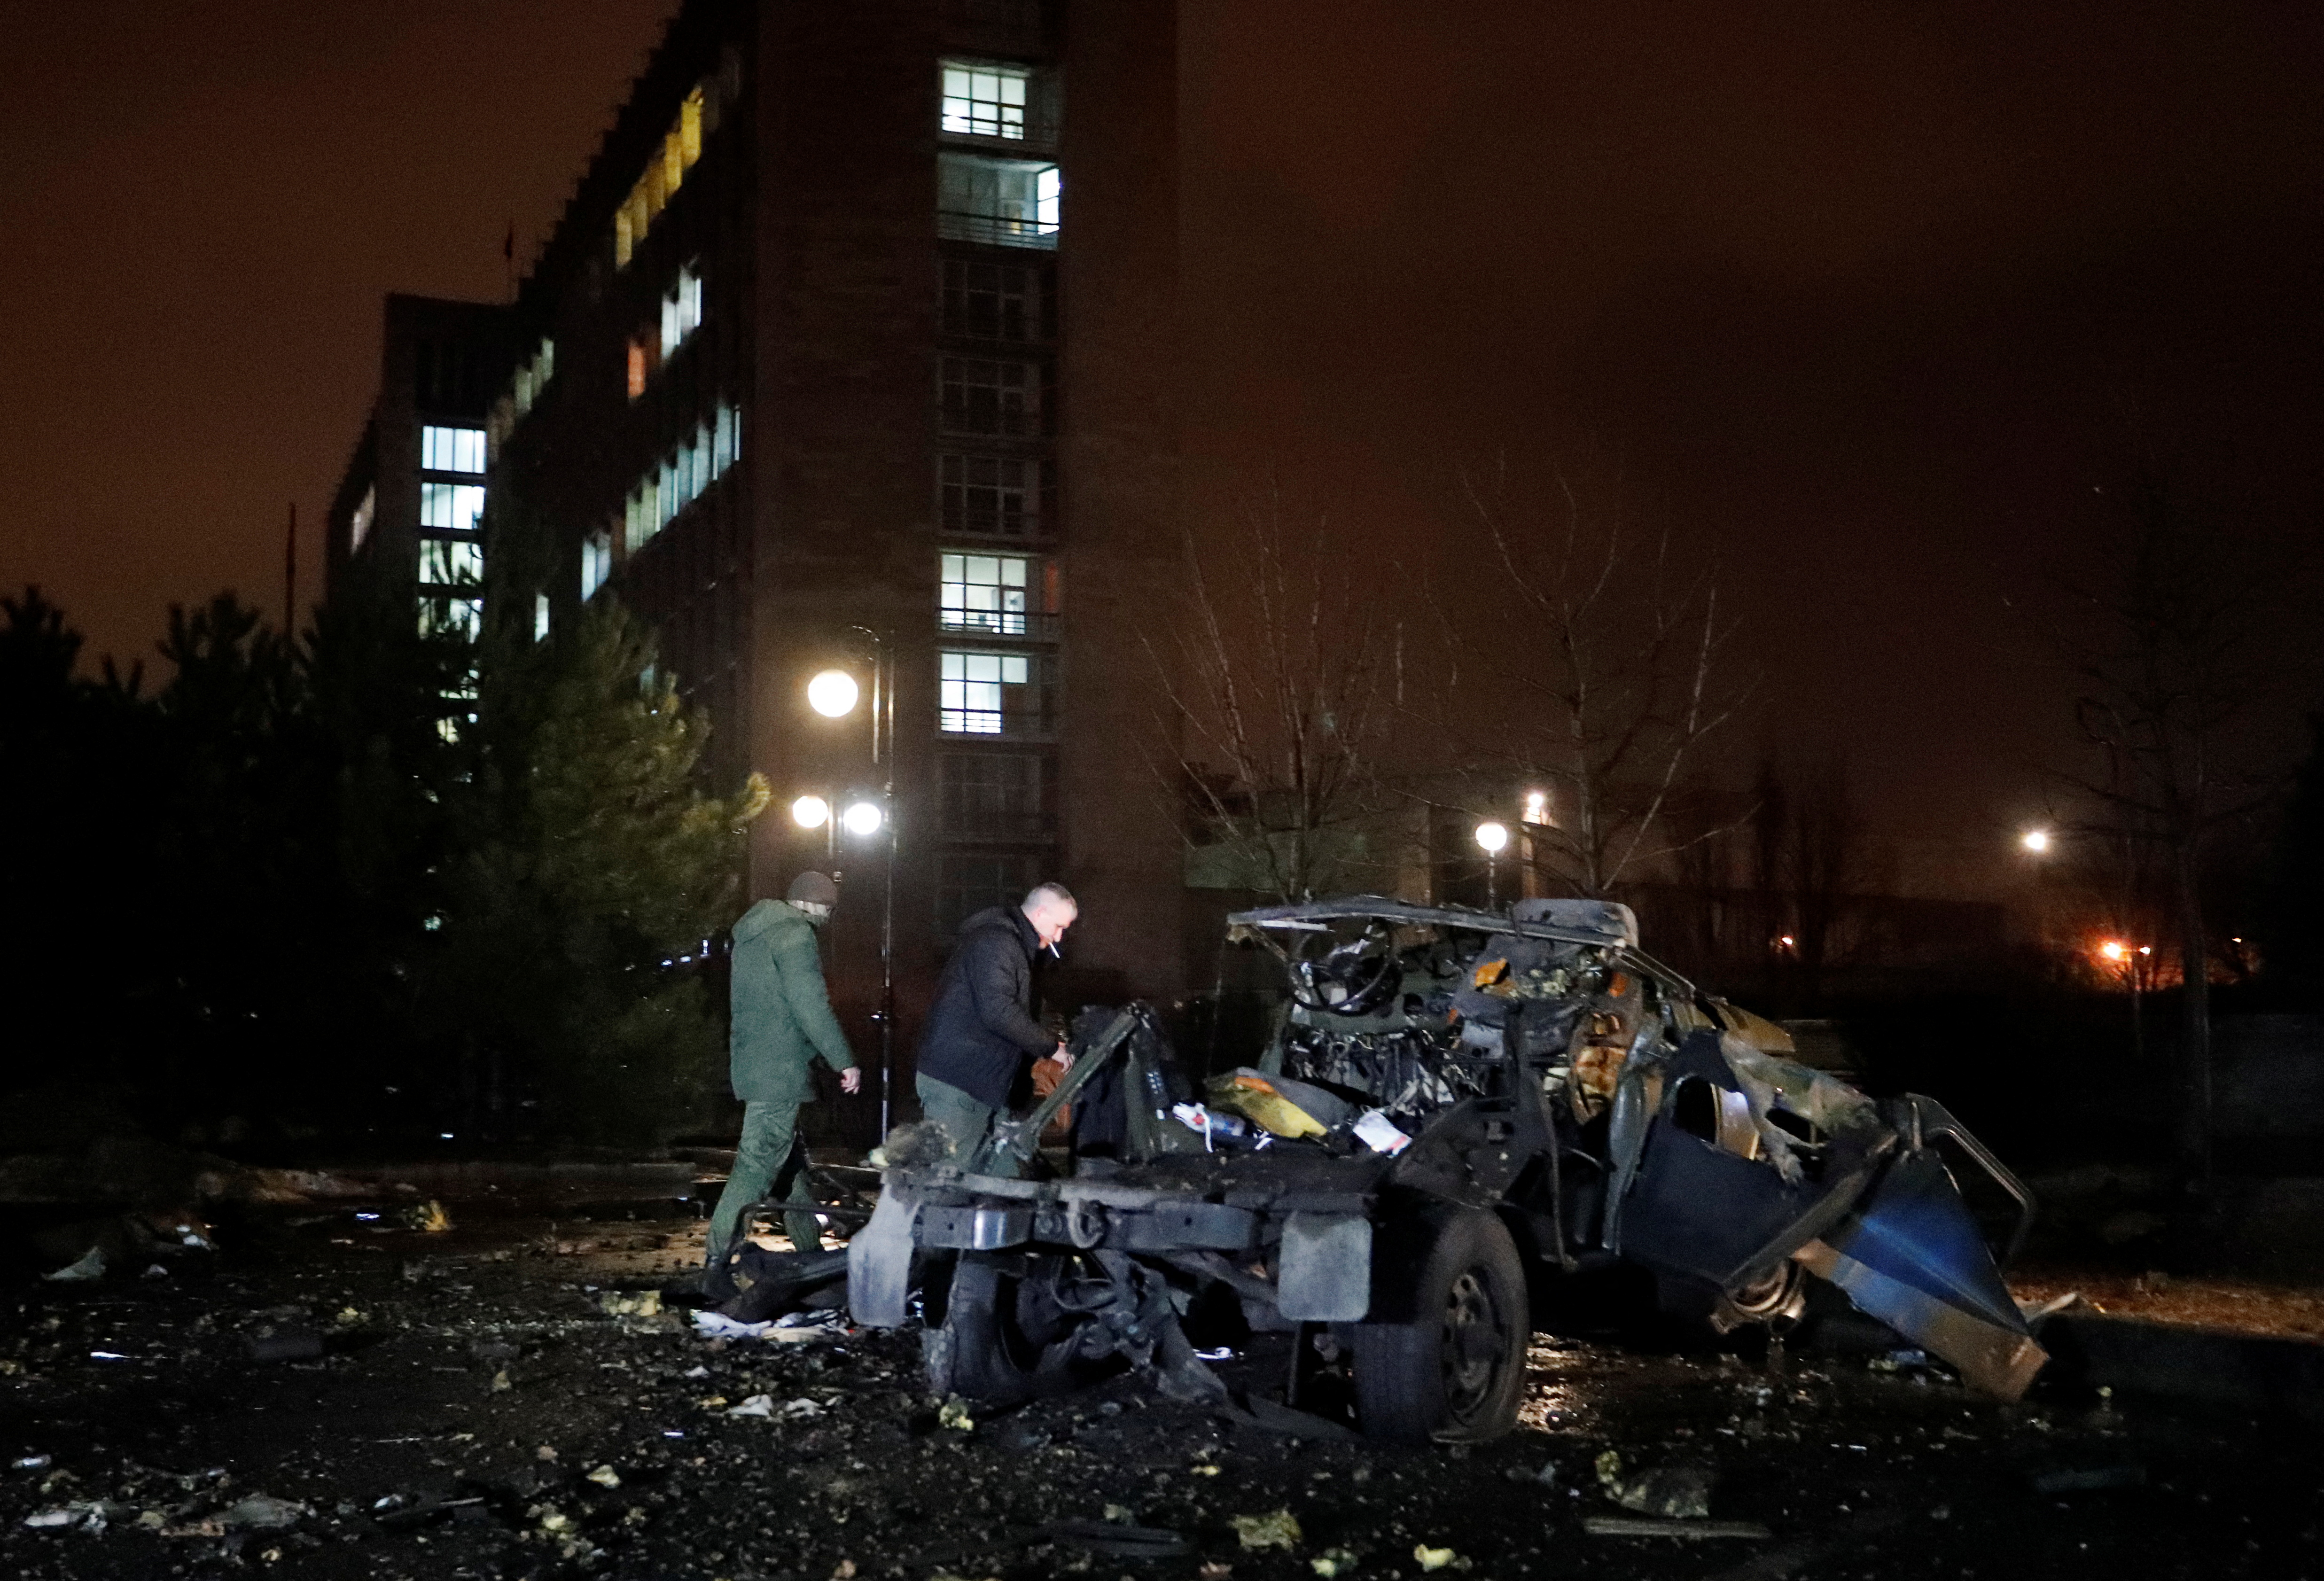 Una vista muestra los restos de un automóvil que, según las autoridades locales, fue volado cerca del edificio del gobierno, en la ciudad controlada por los rebeldes de Donetsk, Ucrania, el 18 de febrero de 2022. REUTERS/Alexander Ermochenko